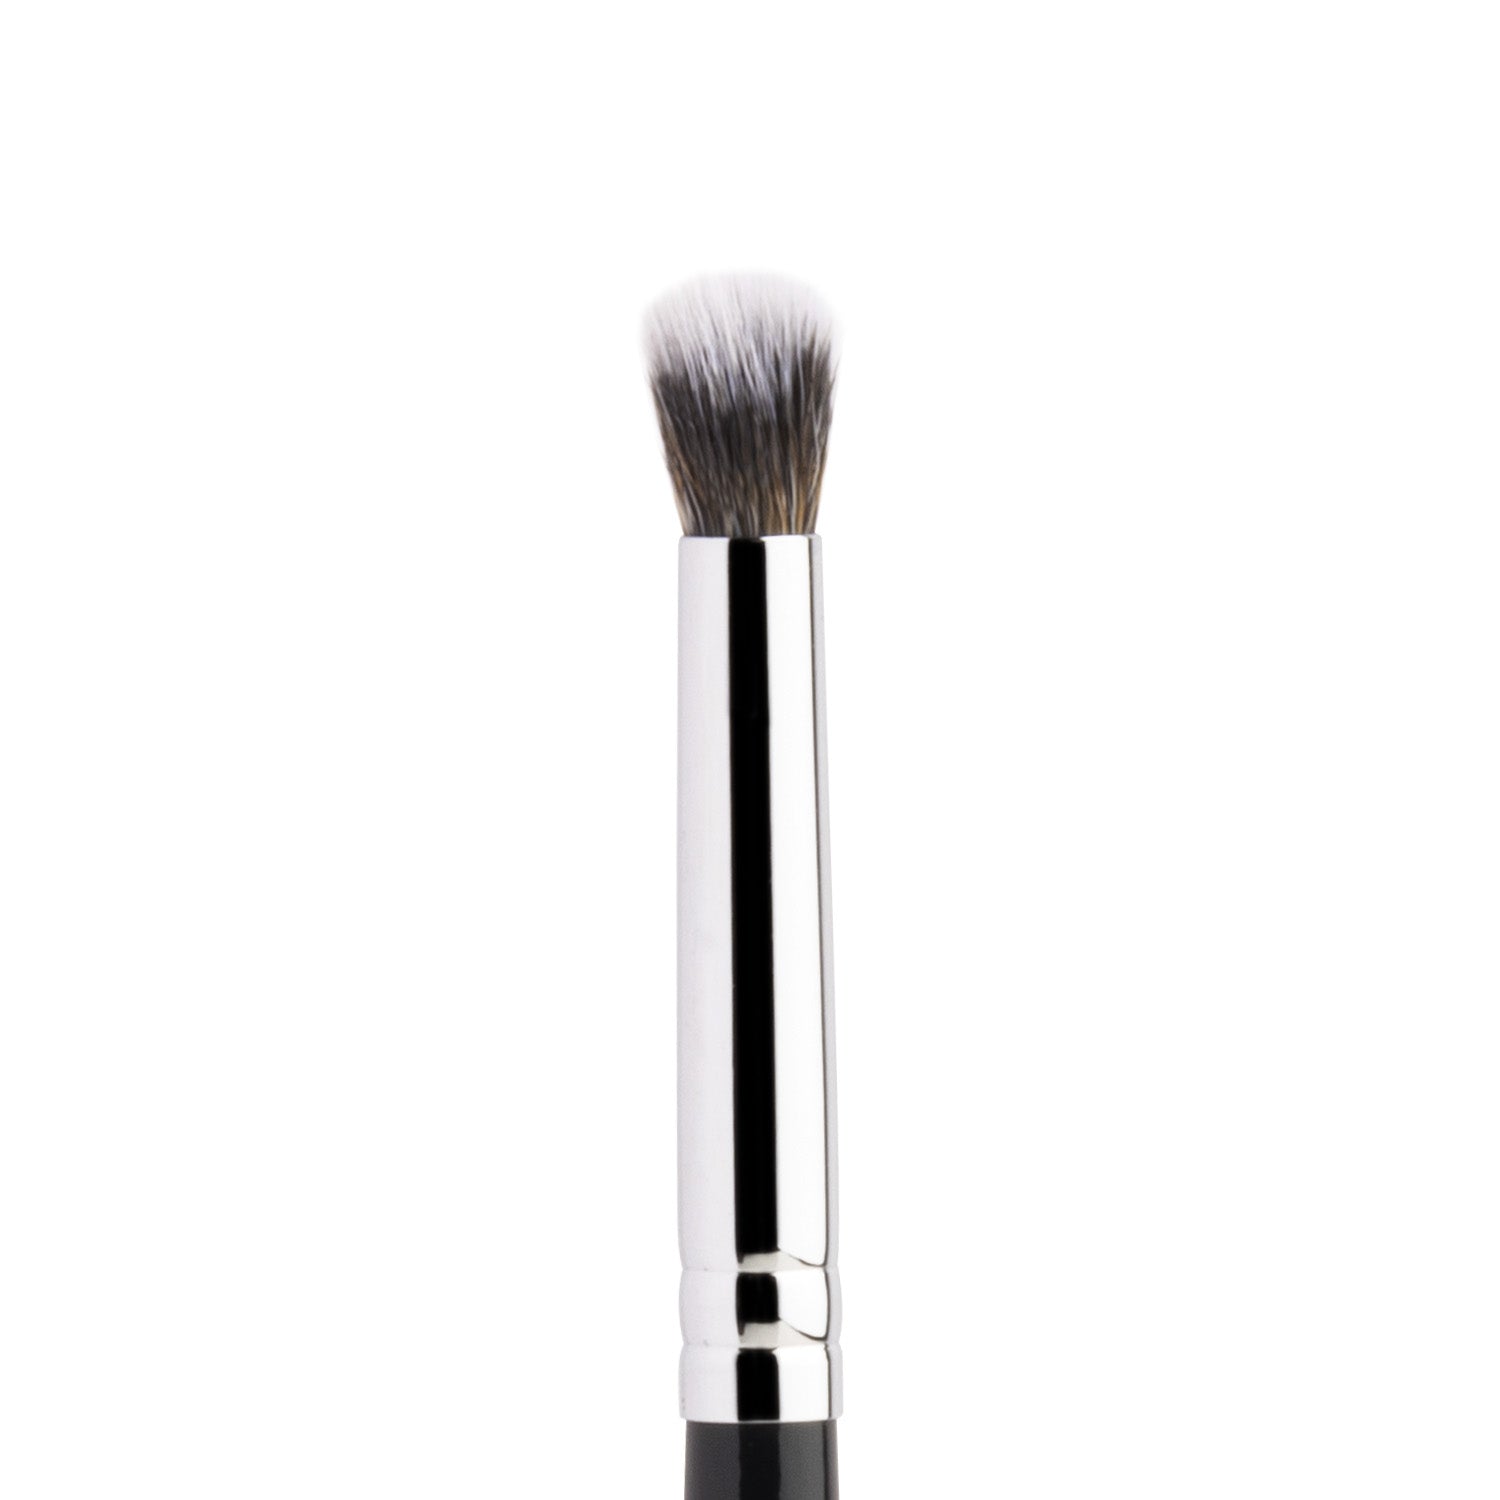 PAC Cosmetics Eyeshadow Blending Brush 203